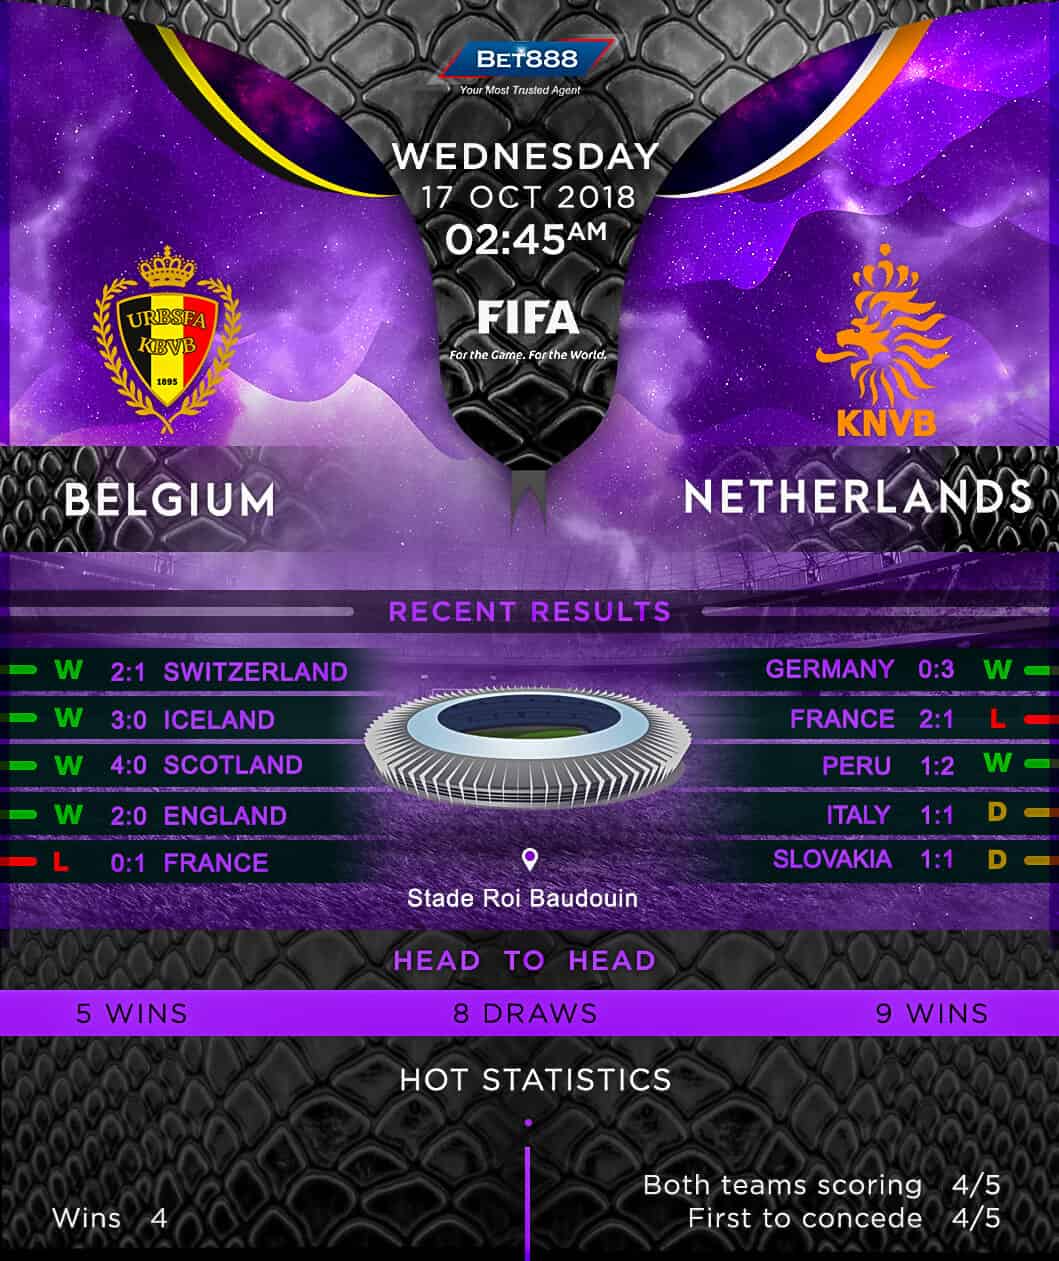 Belgium vs Netherlands 17/10/18